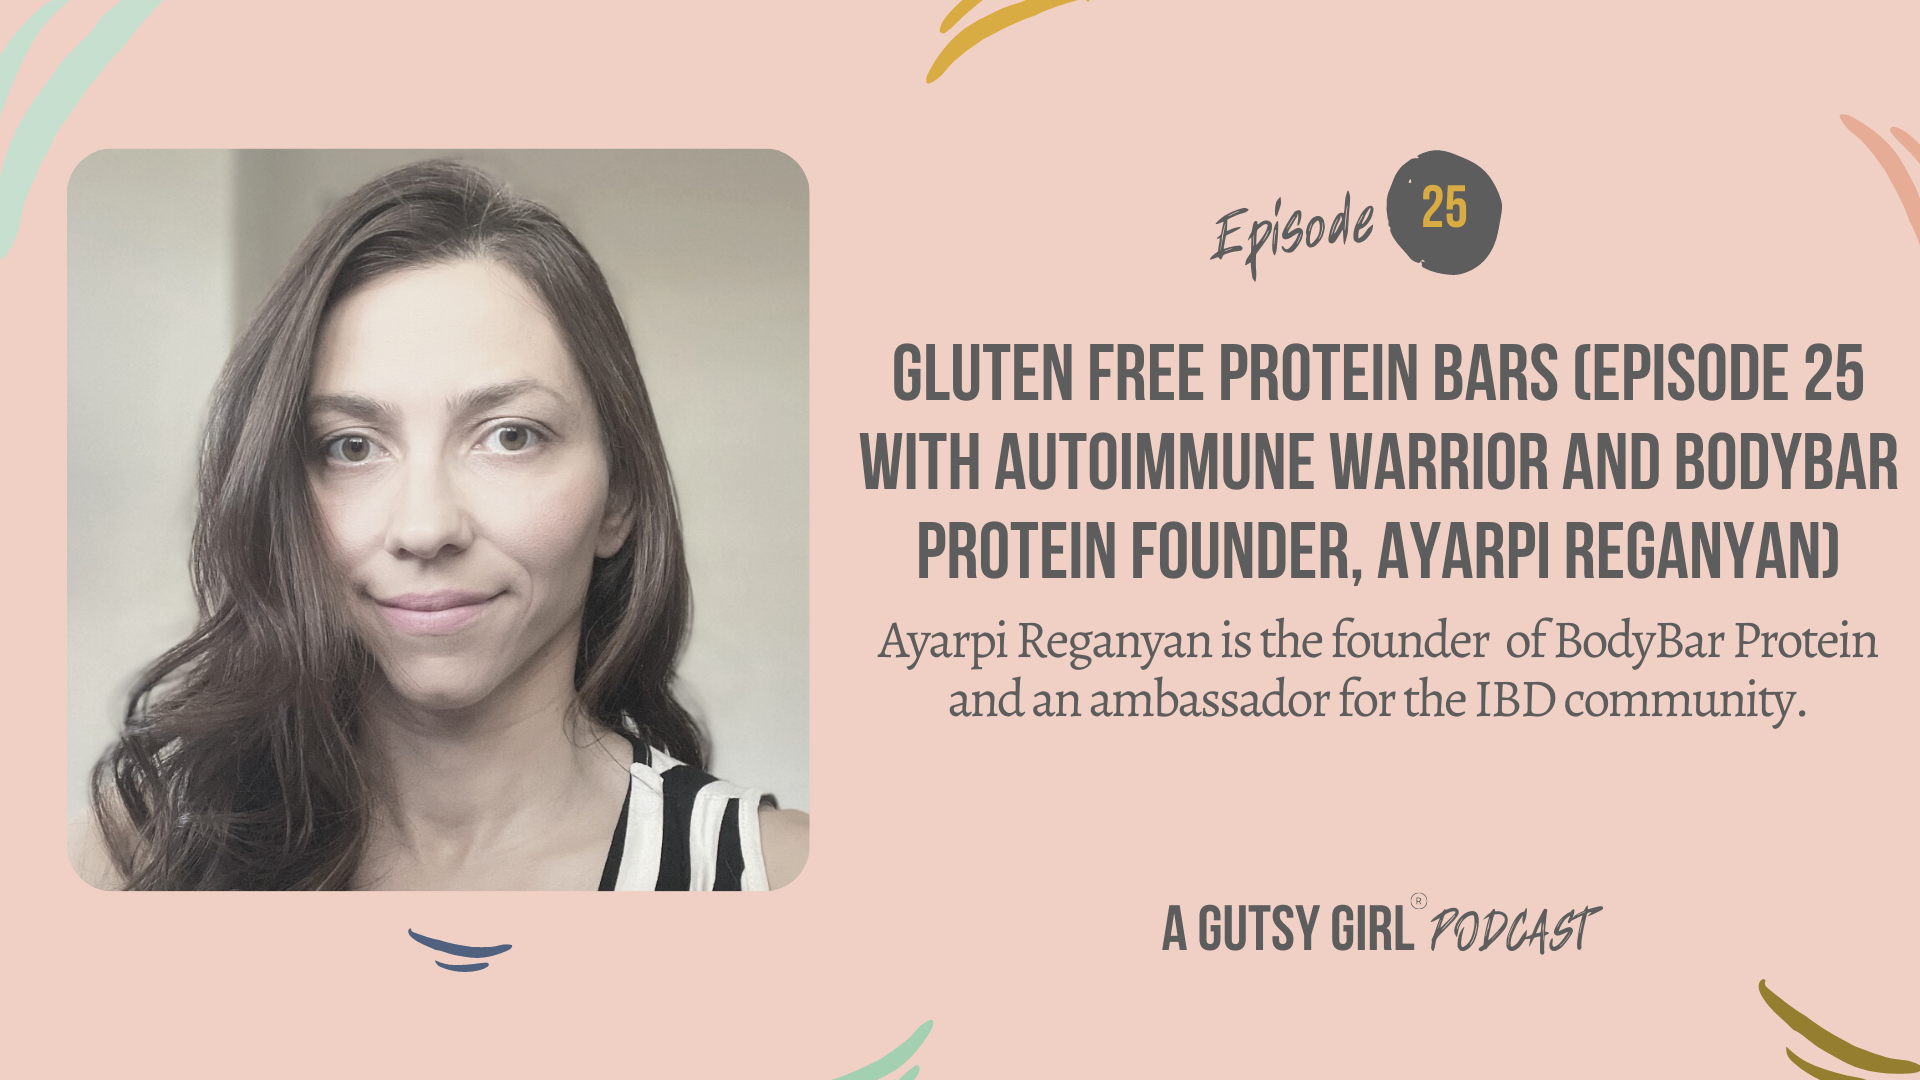 Gluten Free Protein Bars (Episode 25 with Autoimmune Warrior and BodyBar Protein Founder, Ayarpi Reganyan)